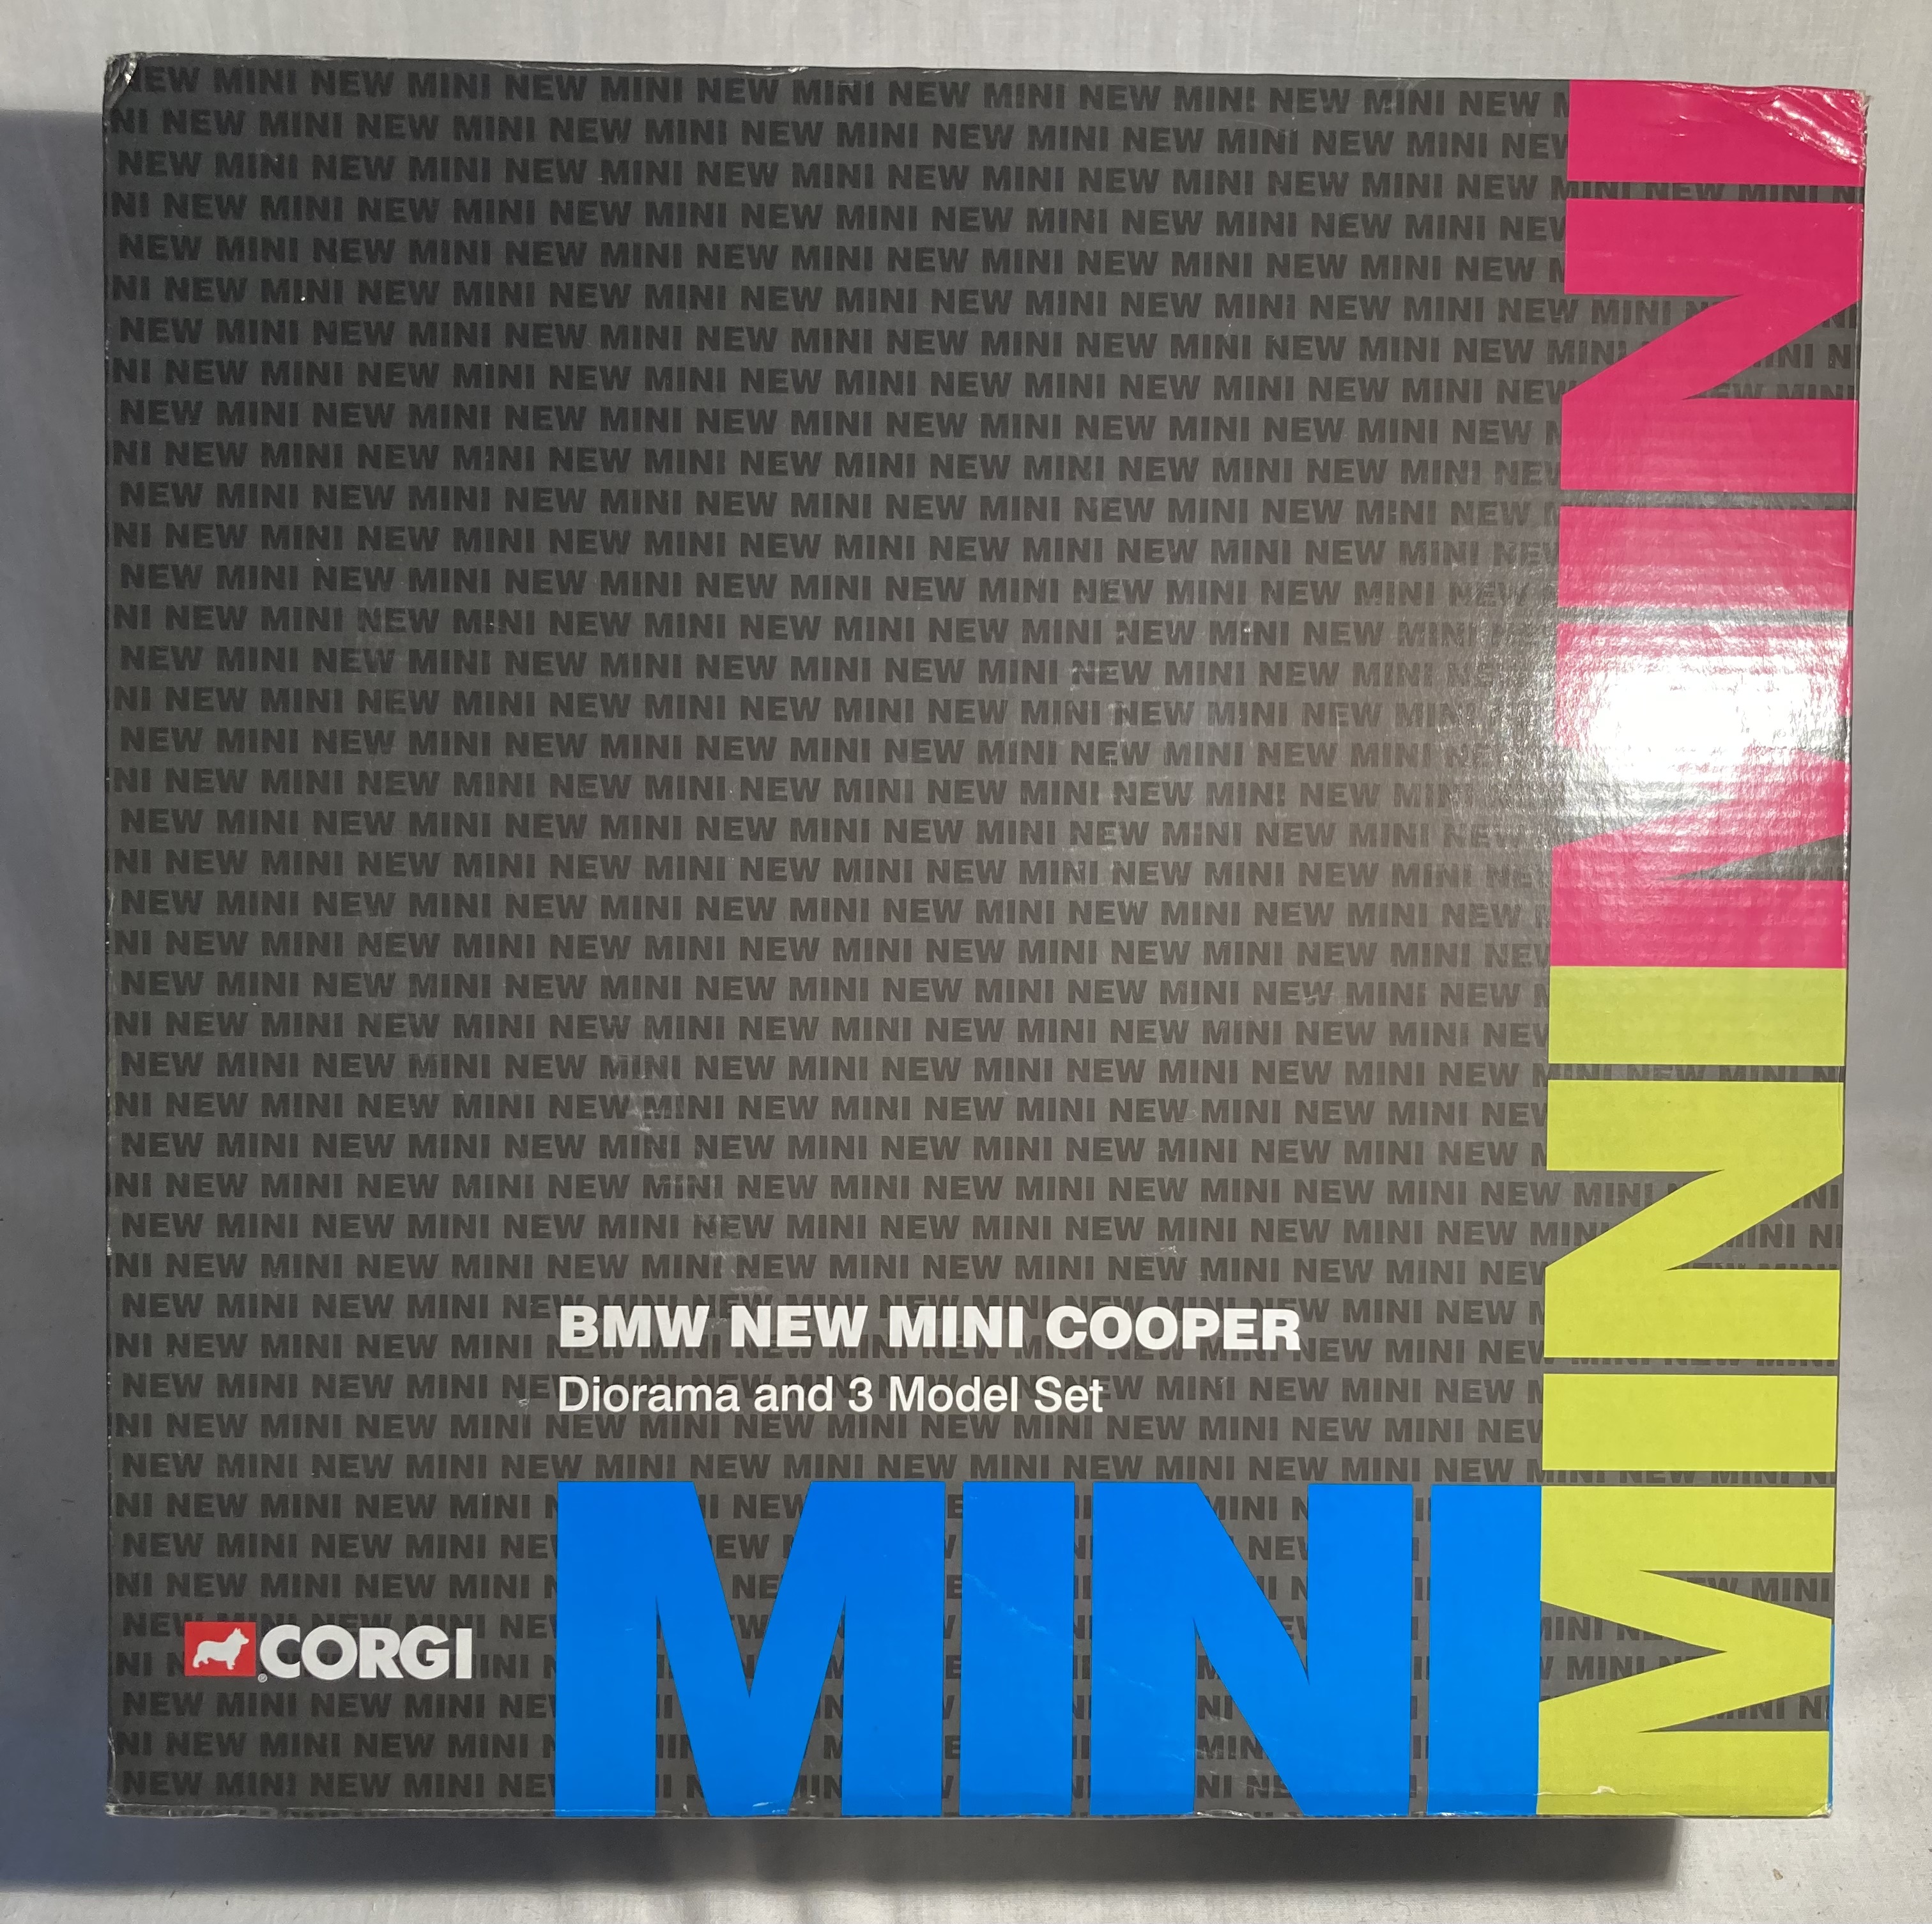 Corgi: A boxed Corgi, BMW New Mini Cooper Diorama and 3 Model Set. CC99121. Unused, still wrapped in